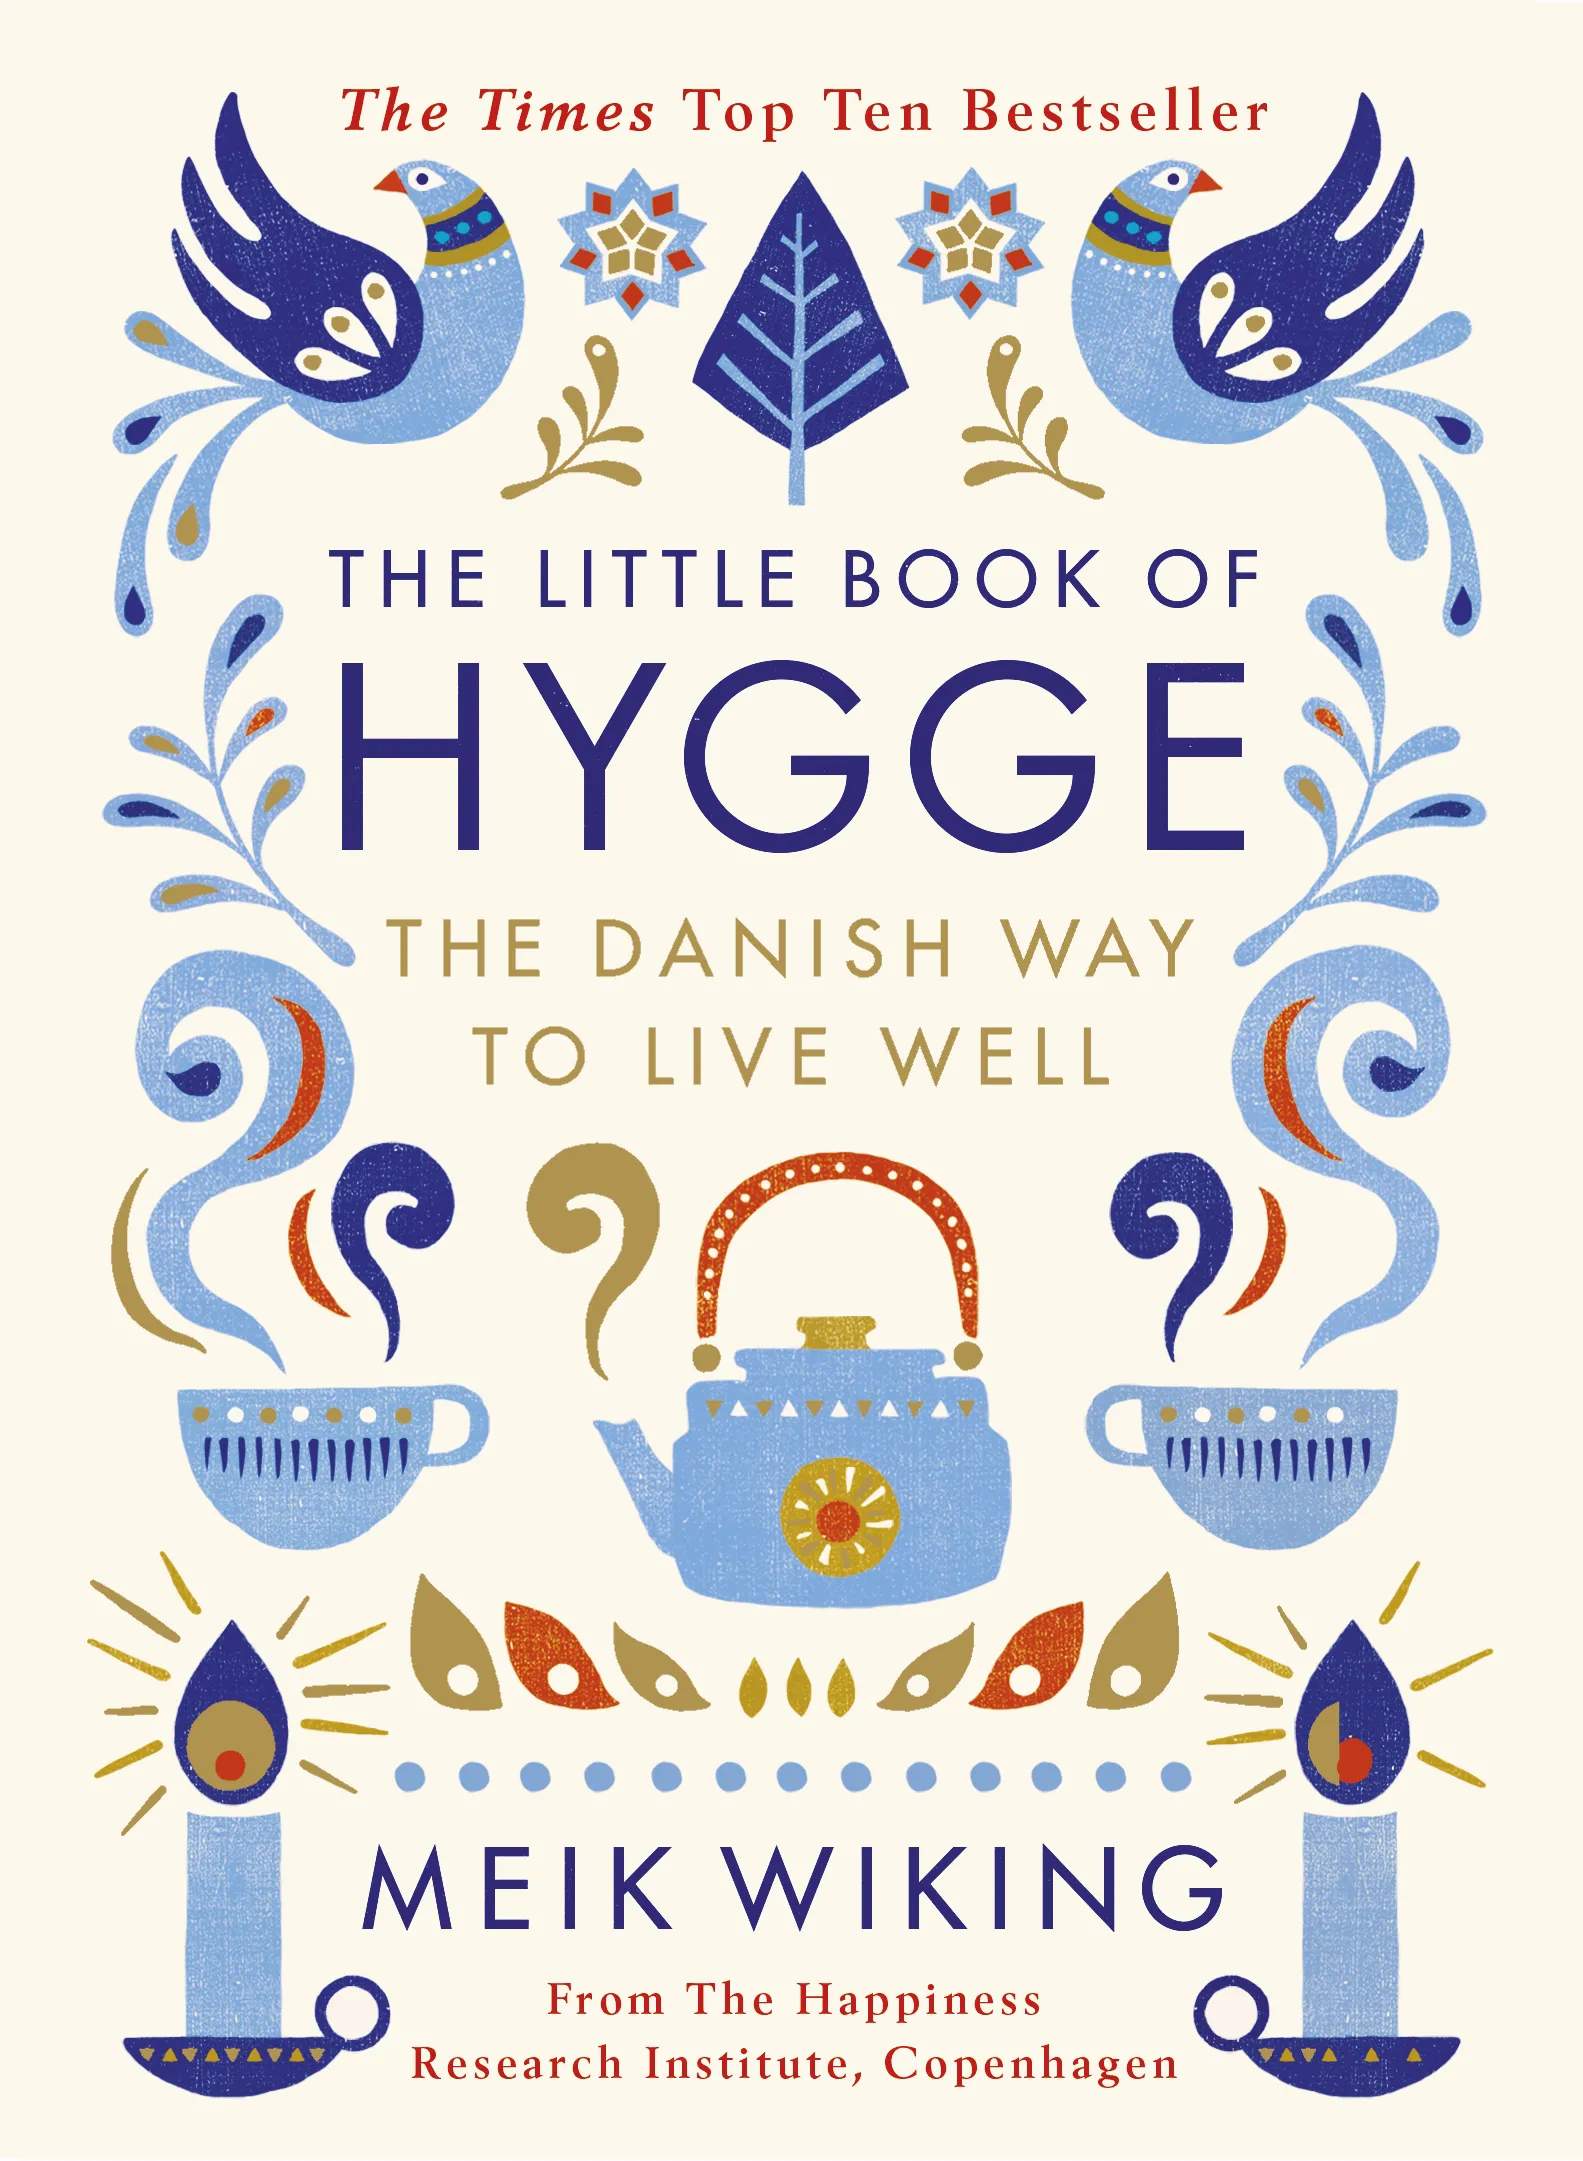 The Little Book of Hygge øvrige bøger